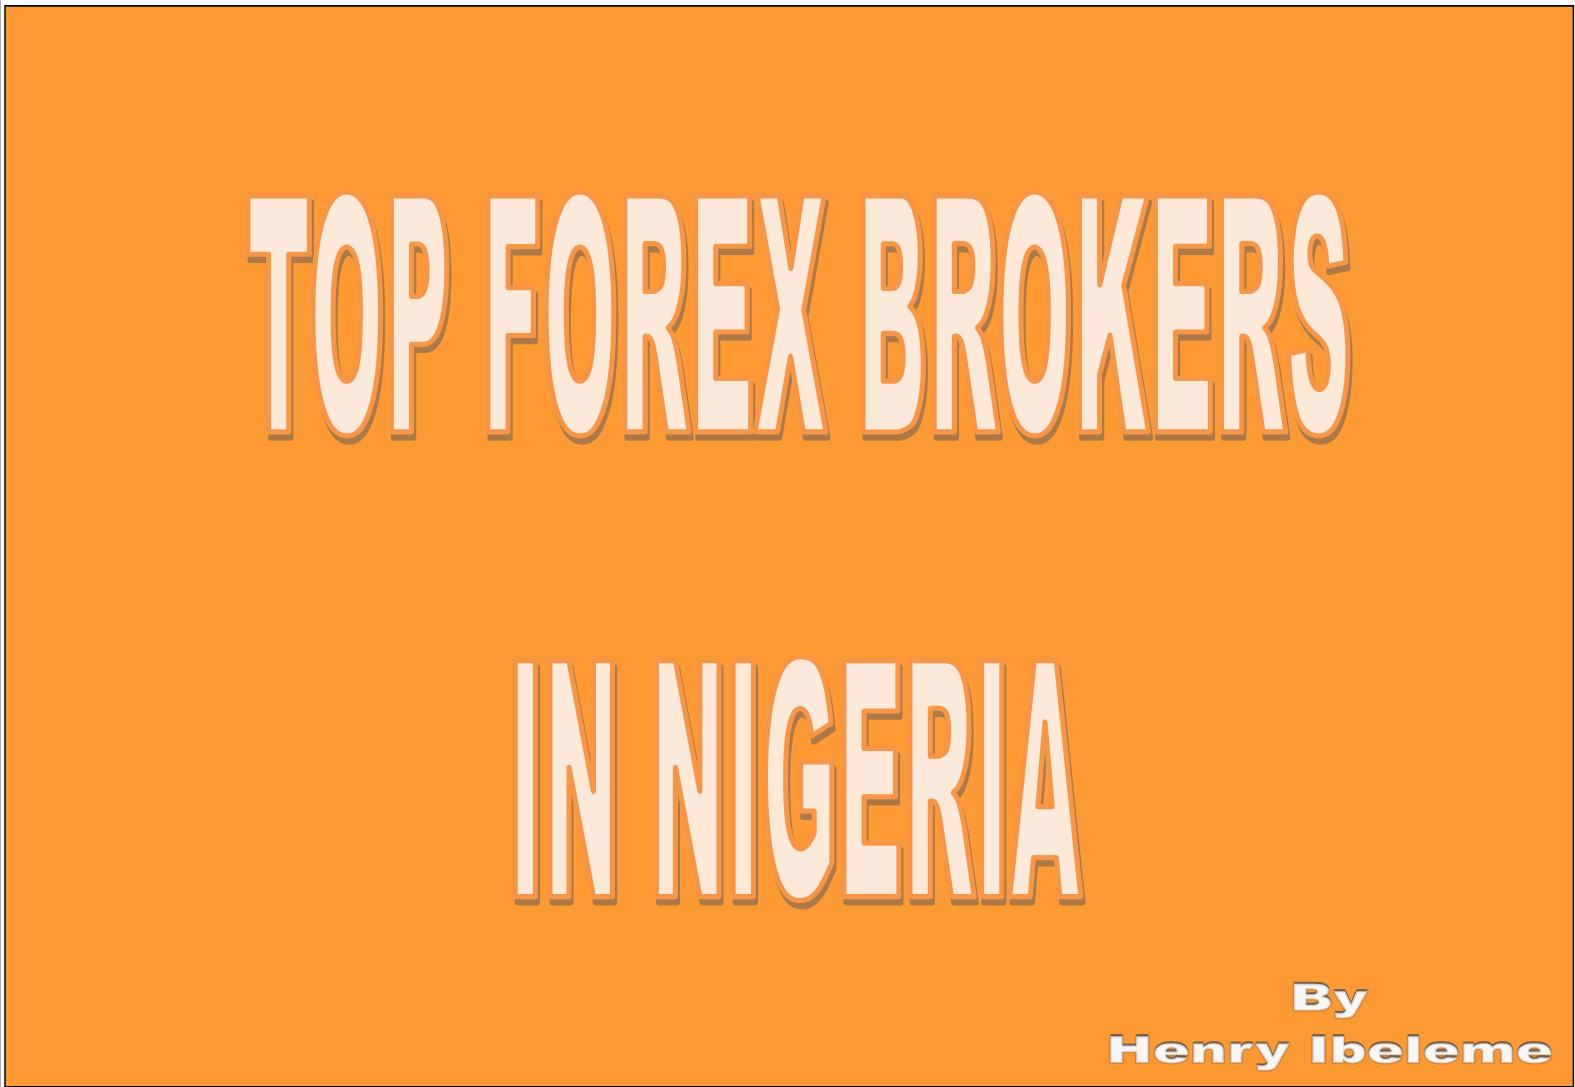 List of forex brokers in nigeria